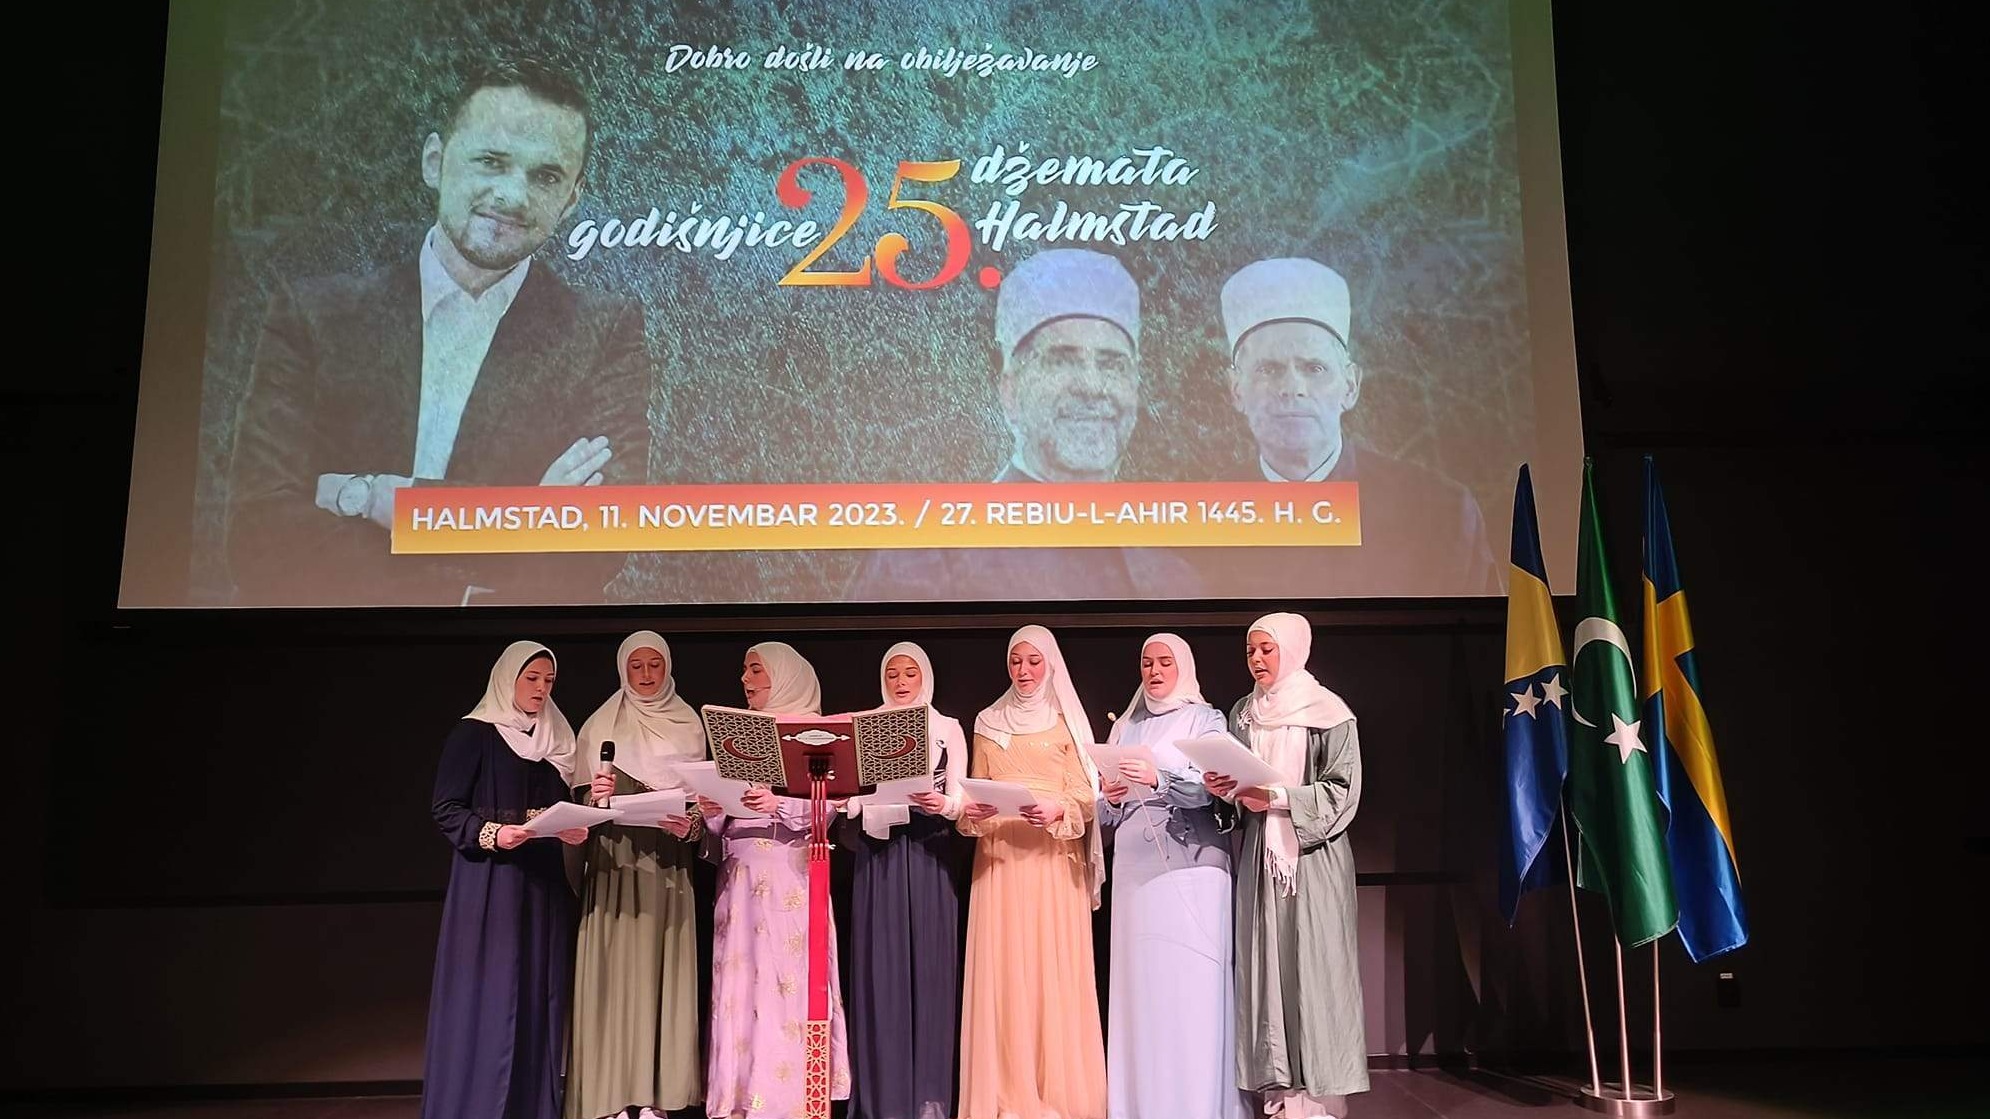 Švedska: Džemat Halmstad obilježio 25. godišnjicu osnivanja